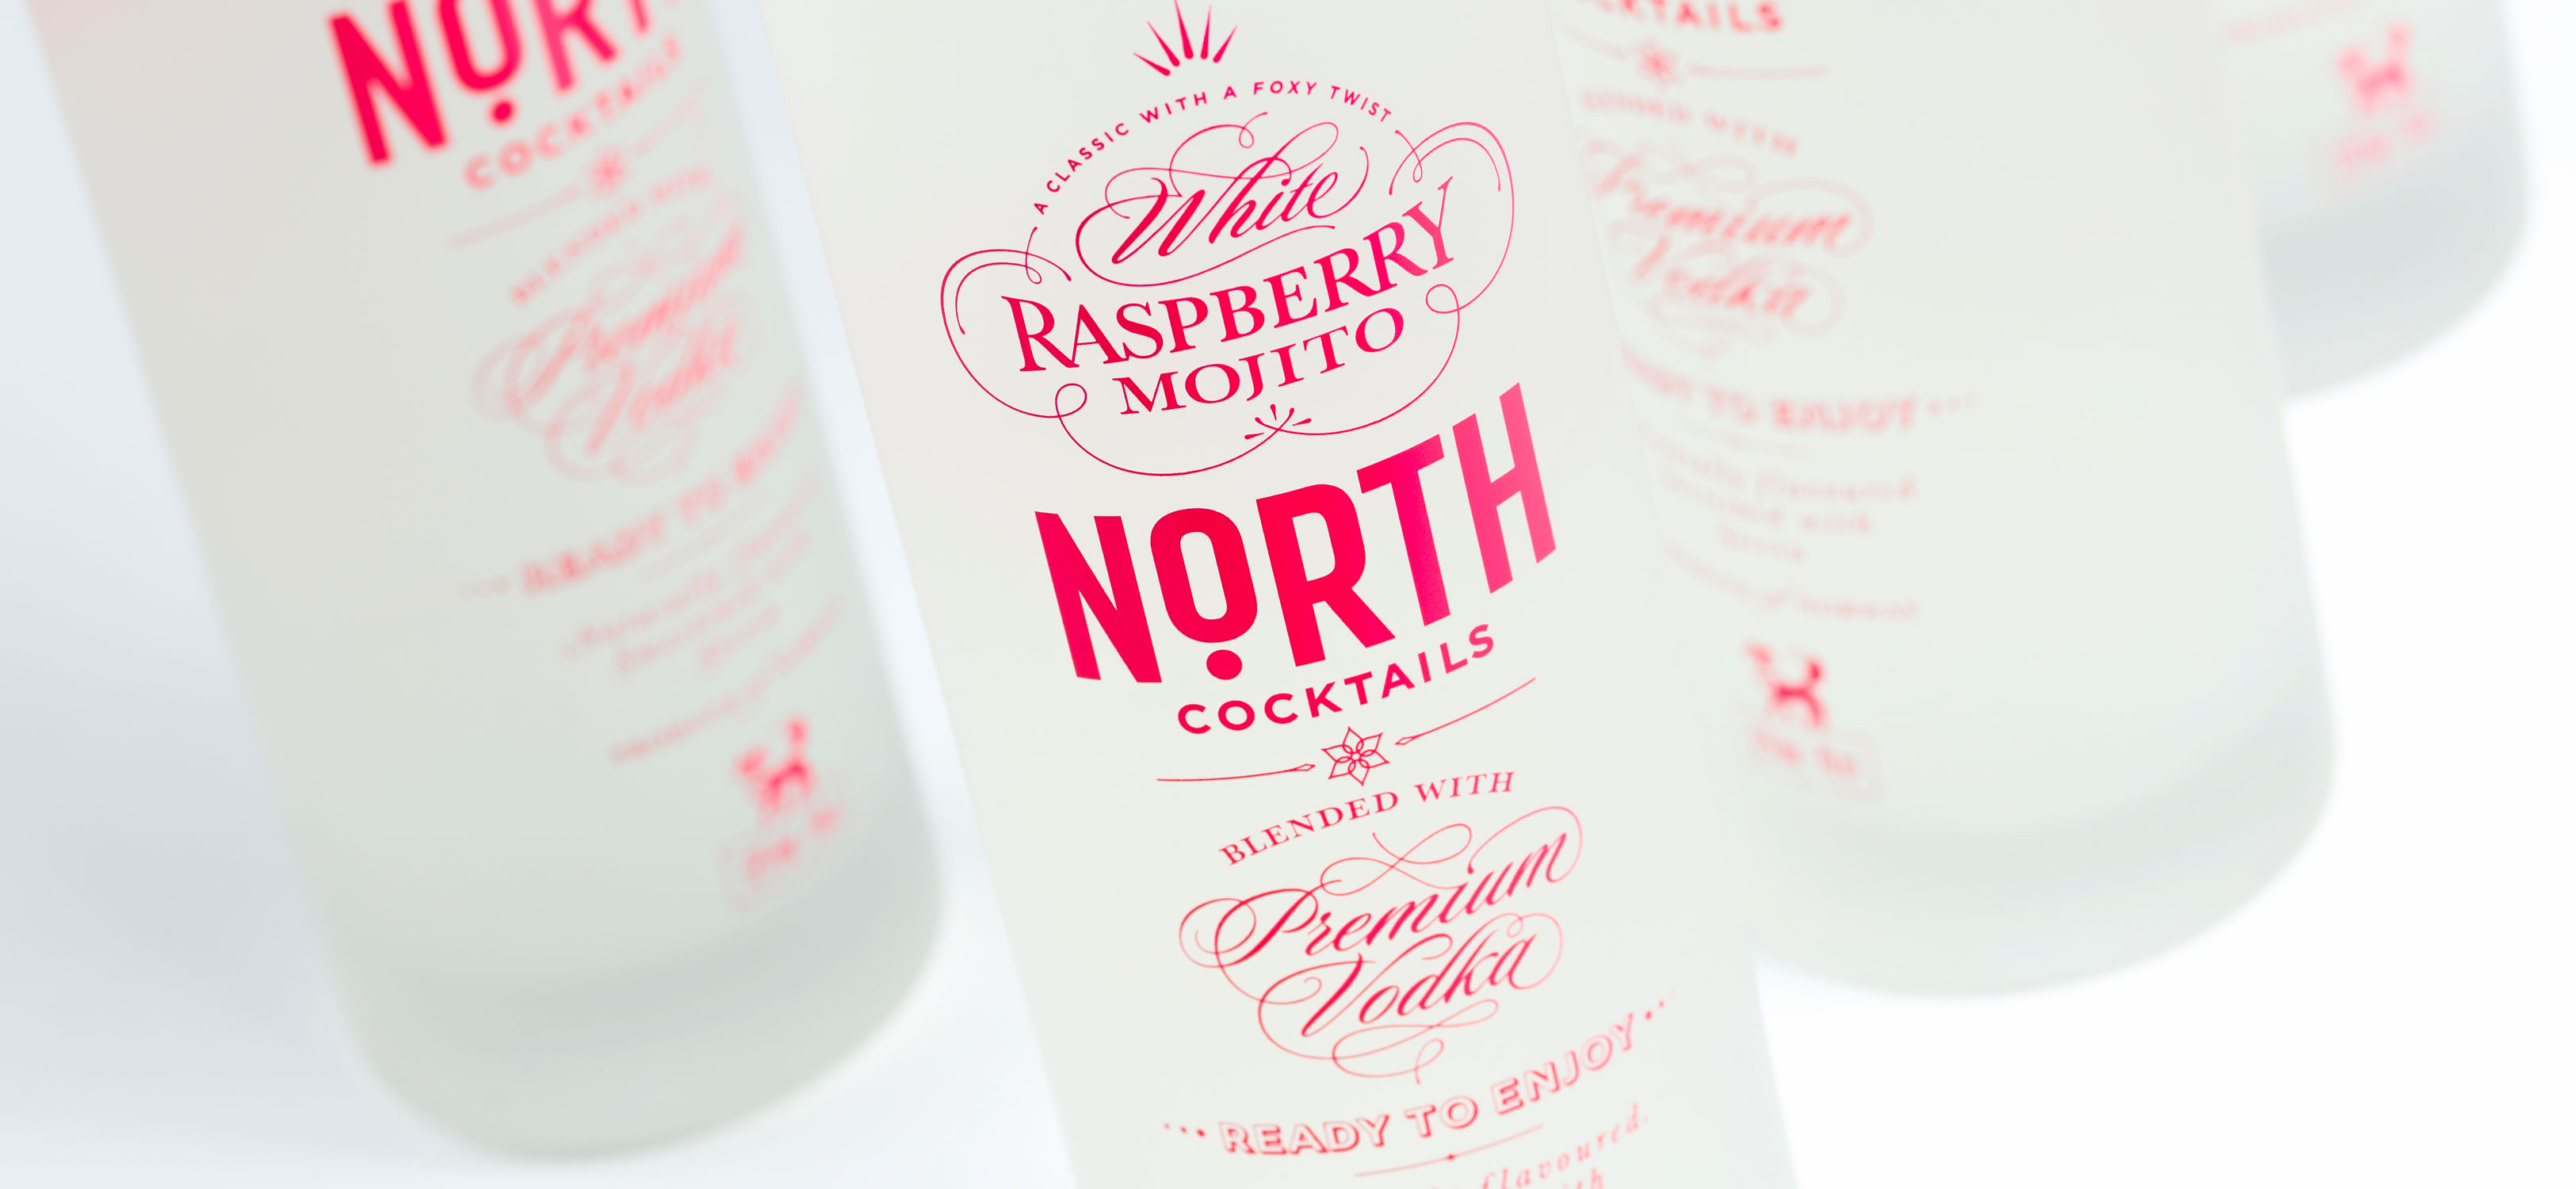 North cocktails premium vodka hvit bringebær mojito flaske bottle white raspberry